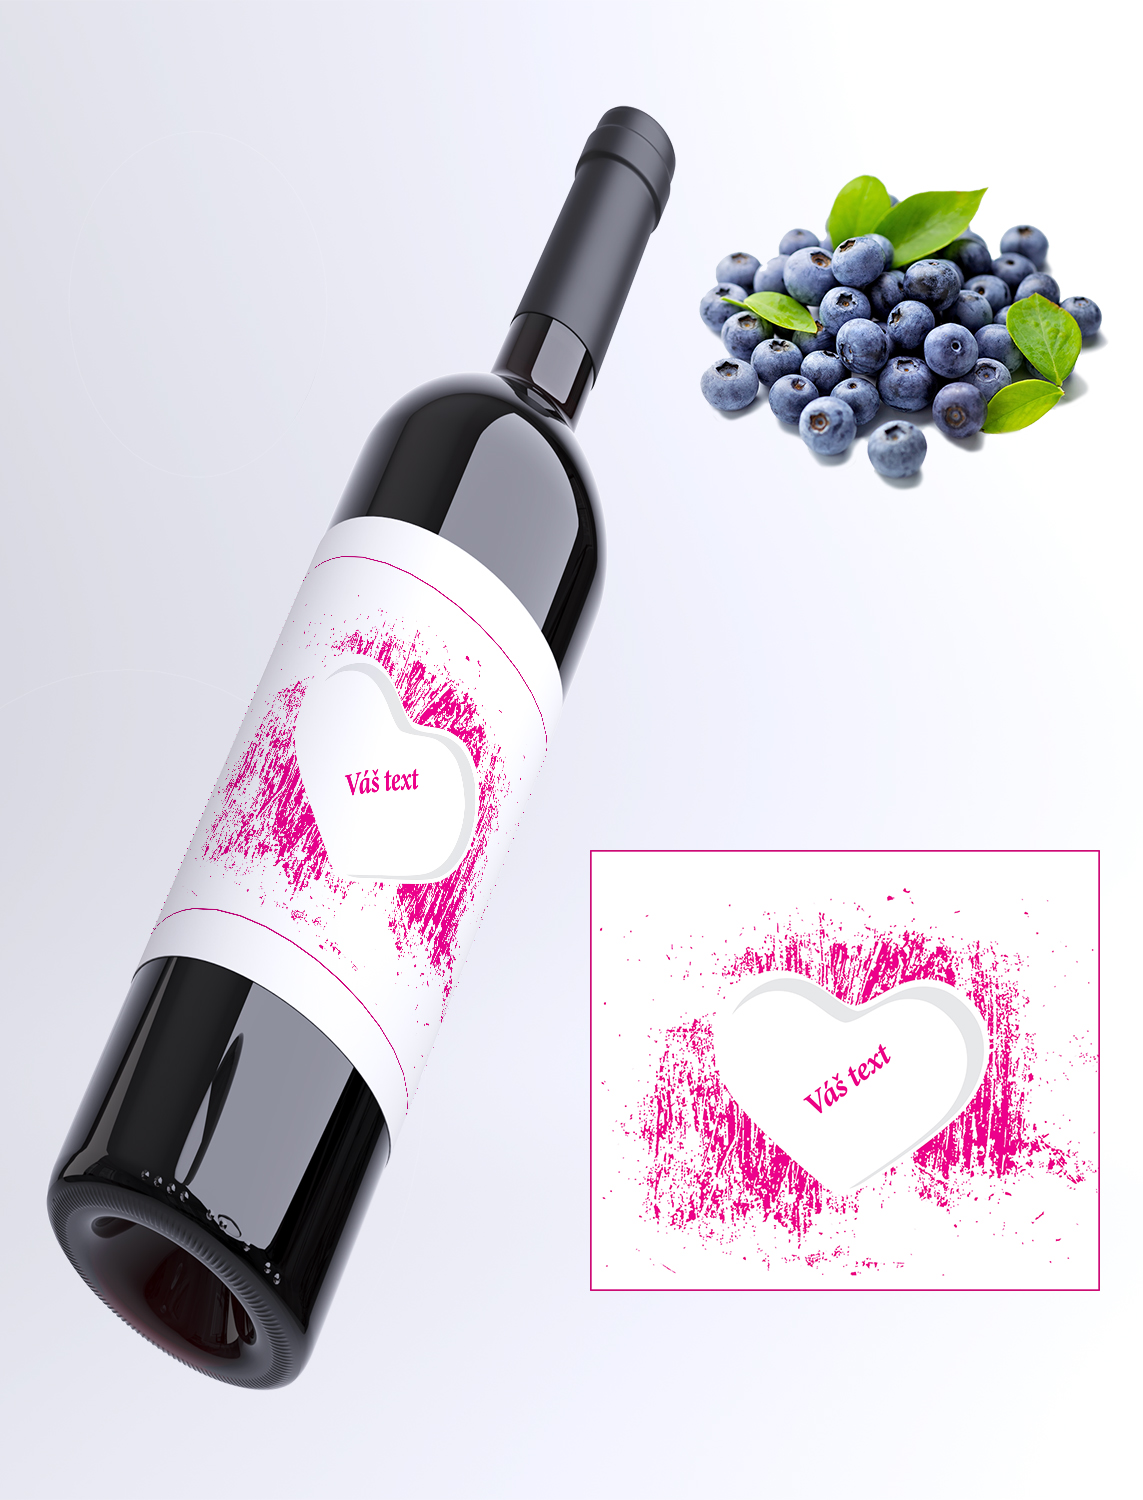 Srdce pink - Váš text - borůvkové víno